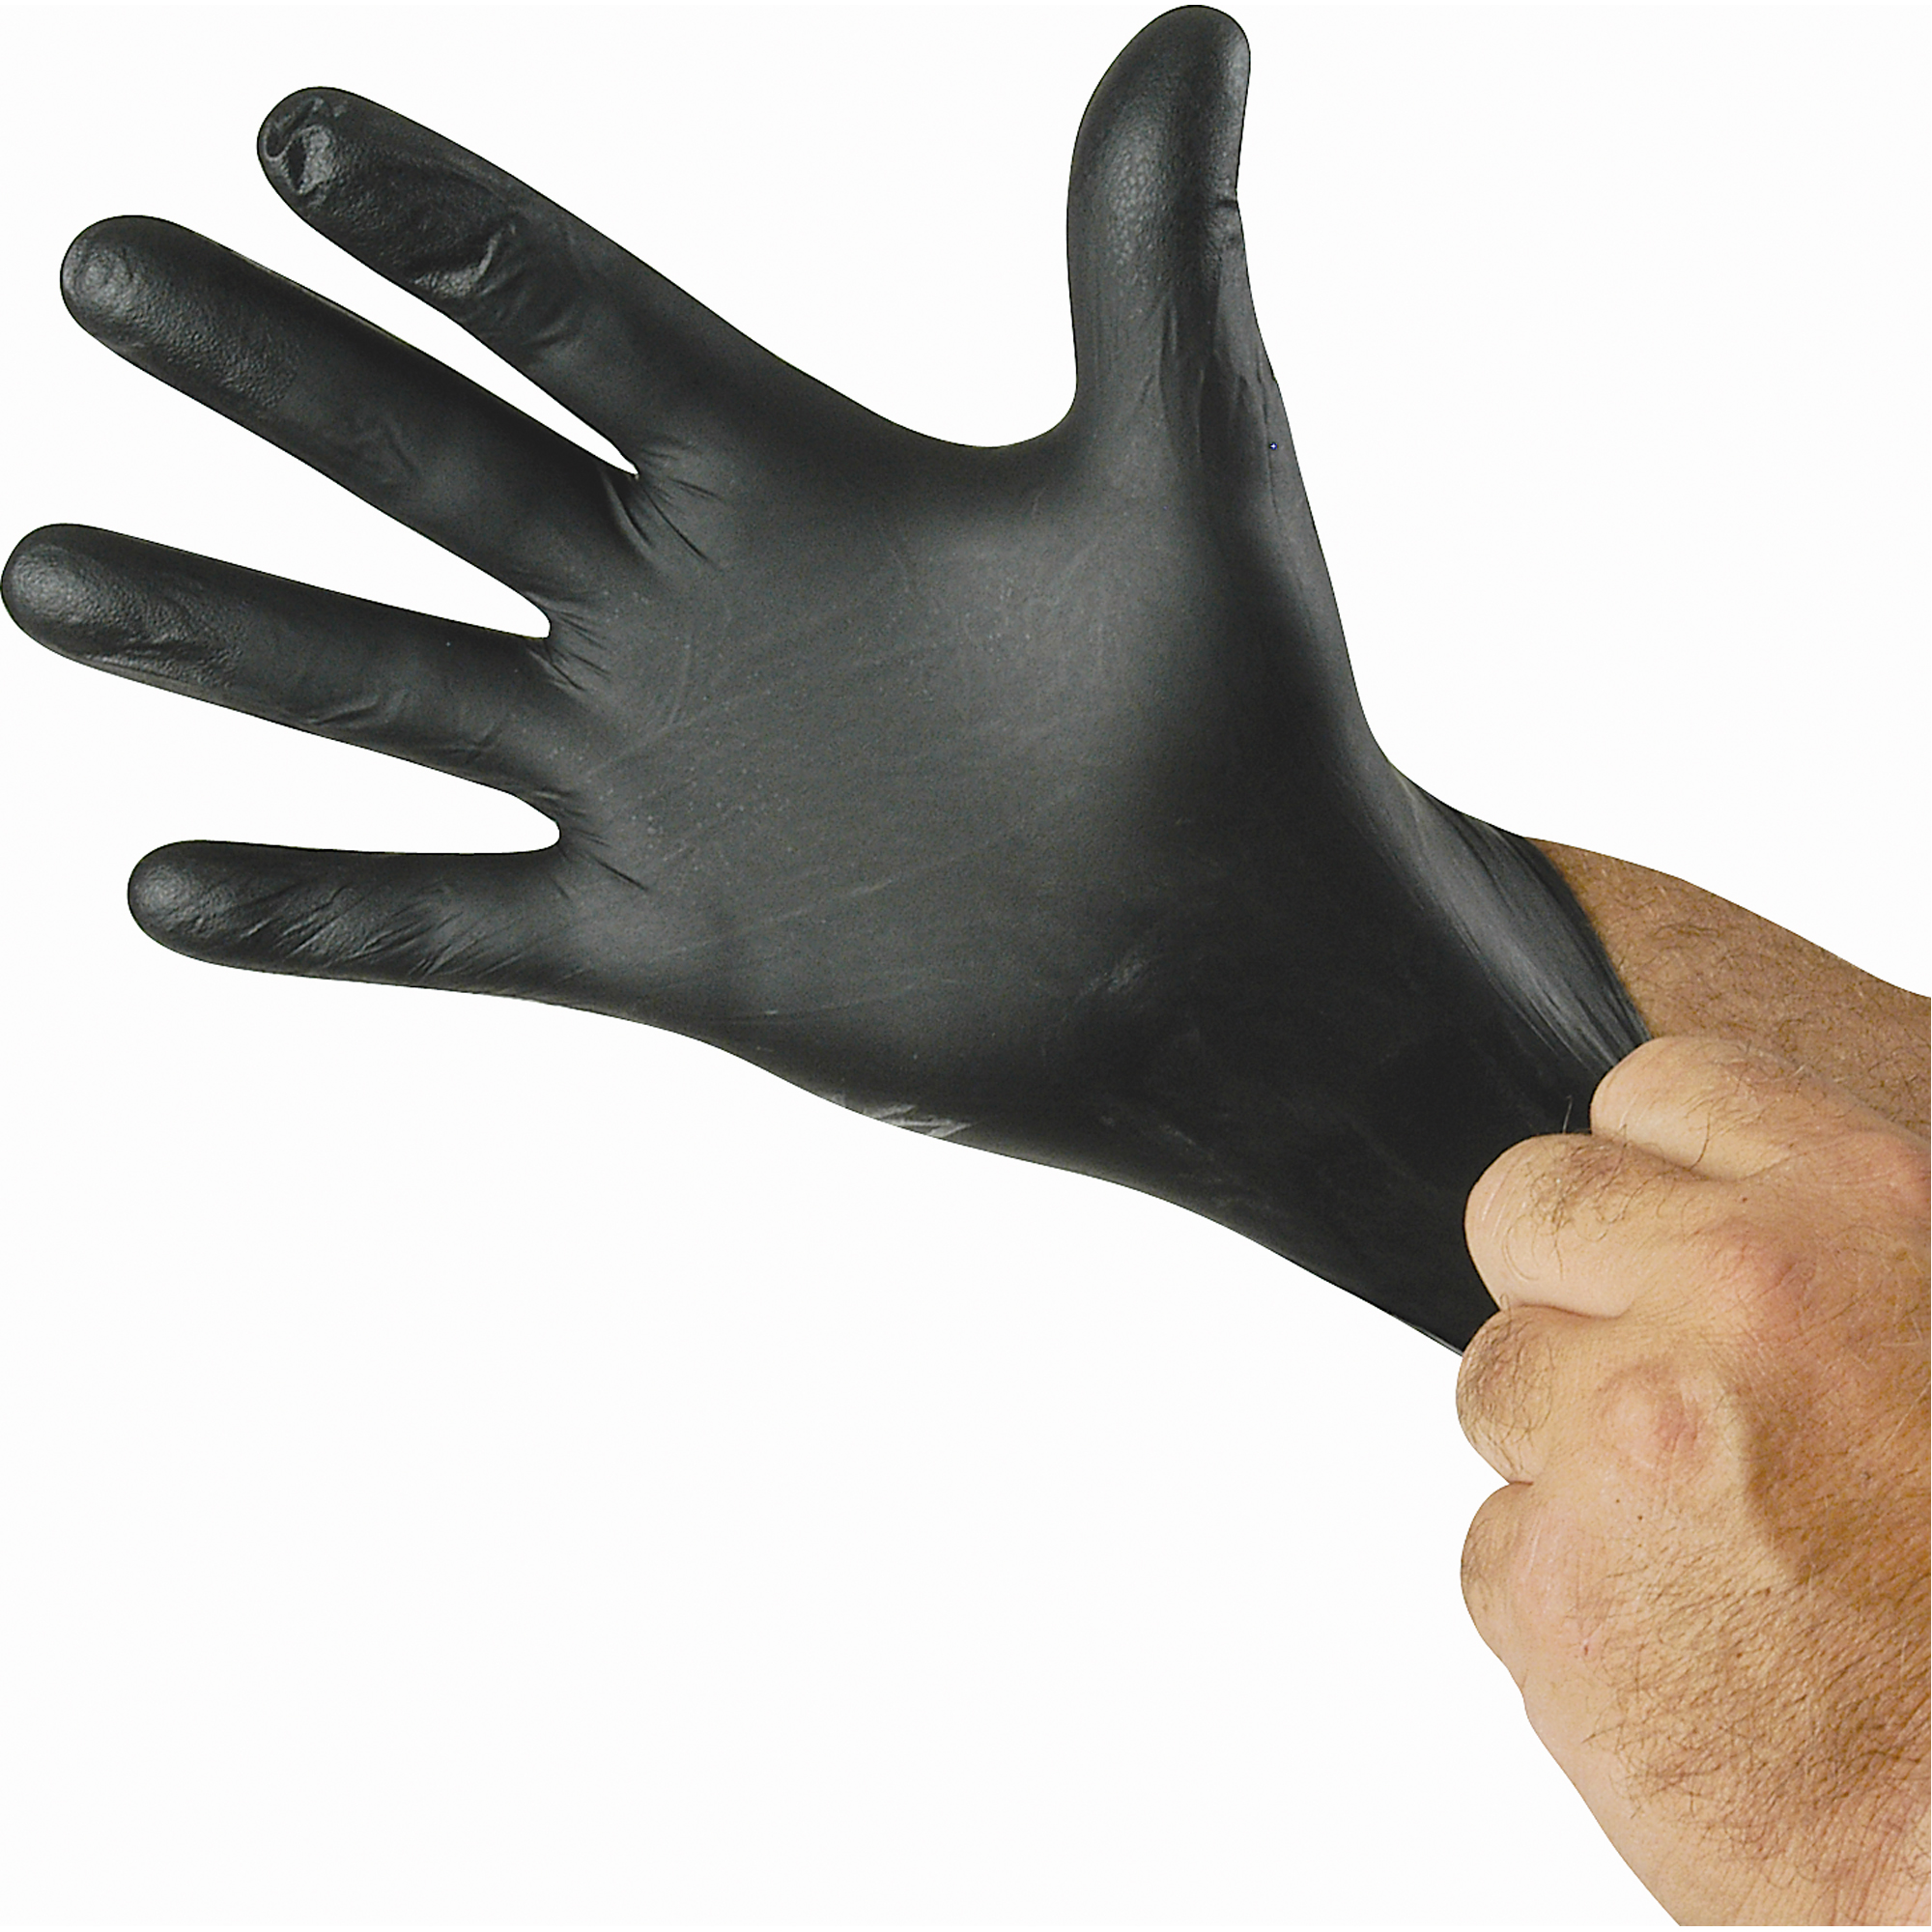 Showa N-Dex Nighthawk Nitrile Powder-Free Black Gloves, 4-mil, Small, 50 Count 